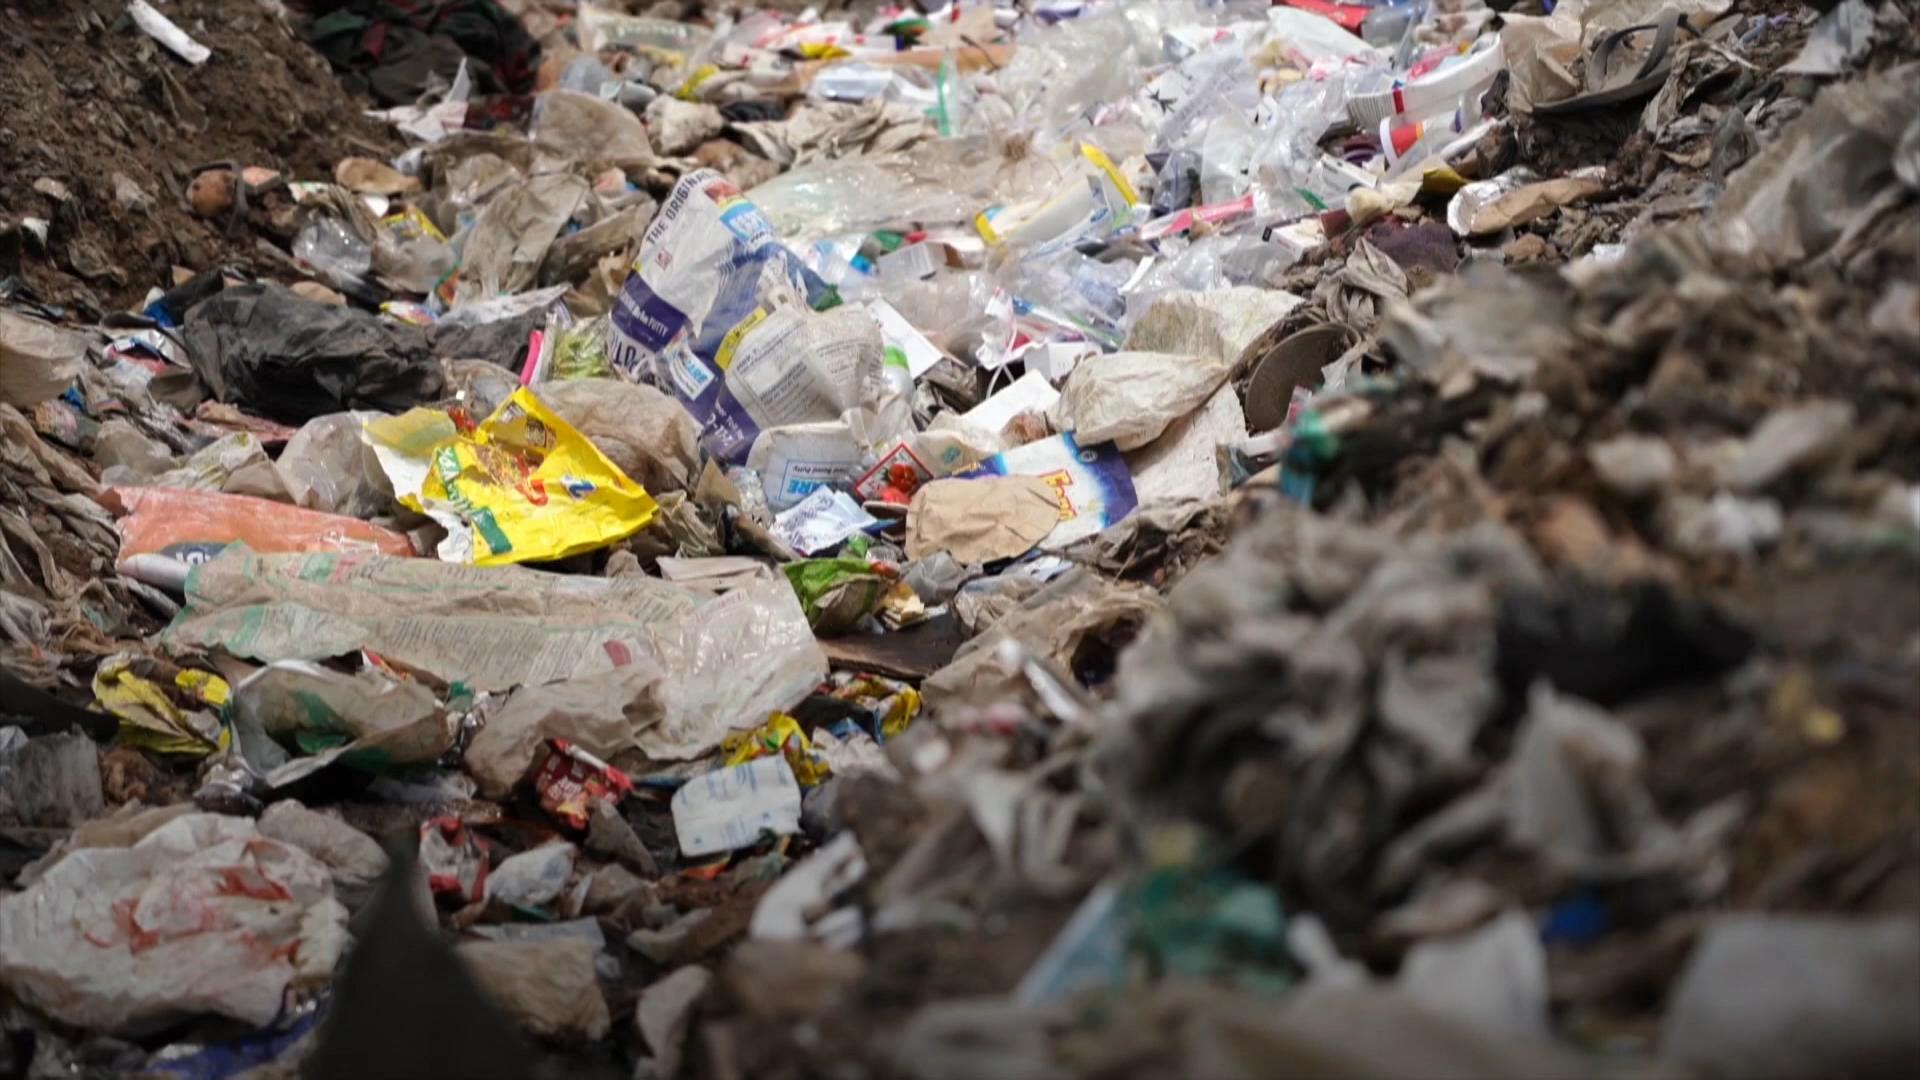 印度是繼美國之後全球第二大塑膠垃圾生產國。政府每年花費數百萬歐元處理塑膠垃圾，但在過去5年中，塑膠垃圾數量翻了一番。為了整治垃圾泛濫，印度宣布從今年7月起逐步淘汰一次性塑膠製品。